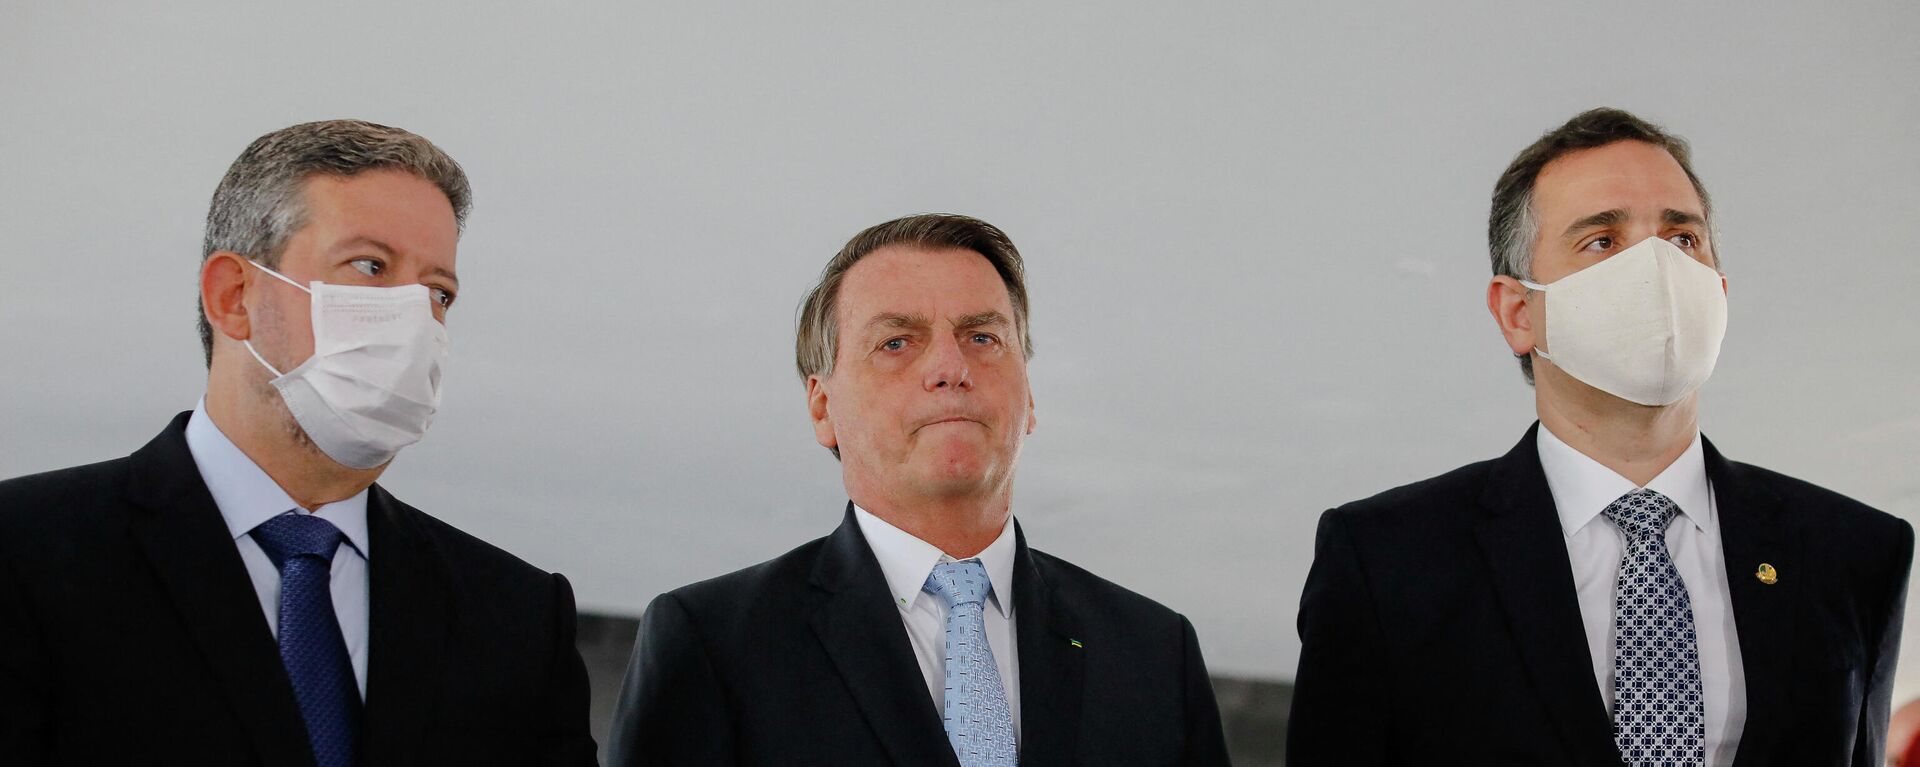 O presidente brasileiro Jair Bolsonaro, ao lado dos presidentes da Câmara dos Deputados, Arthur Lira (esquerda), e do Senado Federal, Rodrigo Pacheco, no Palácio do Planalto, em Brasília, no dia 3 de fevereiro de 2021 - Sputnik Brasil, 1920, 23.12.2021